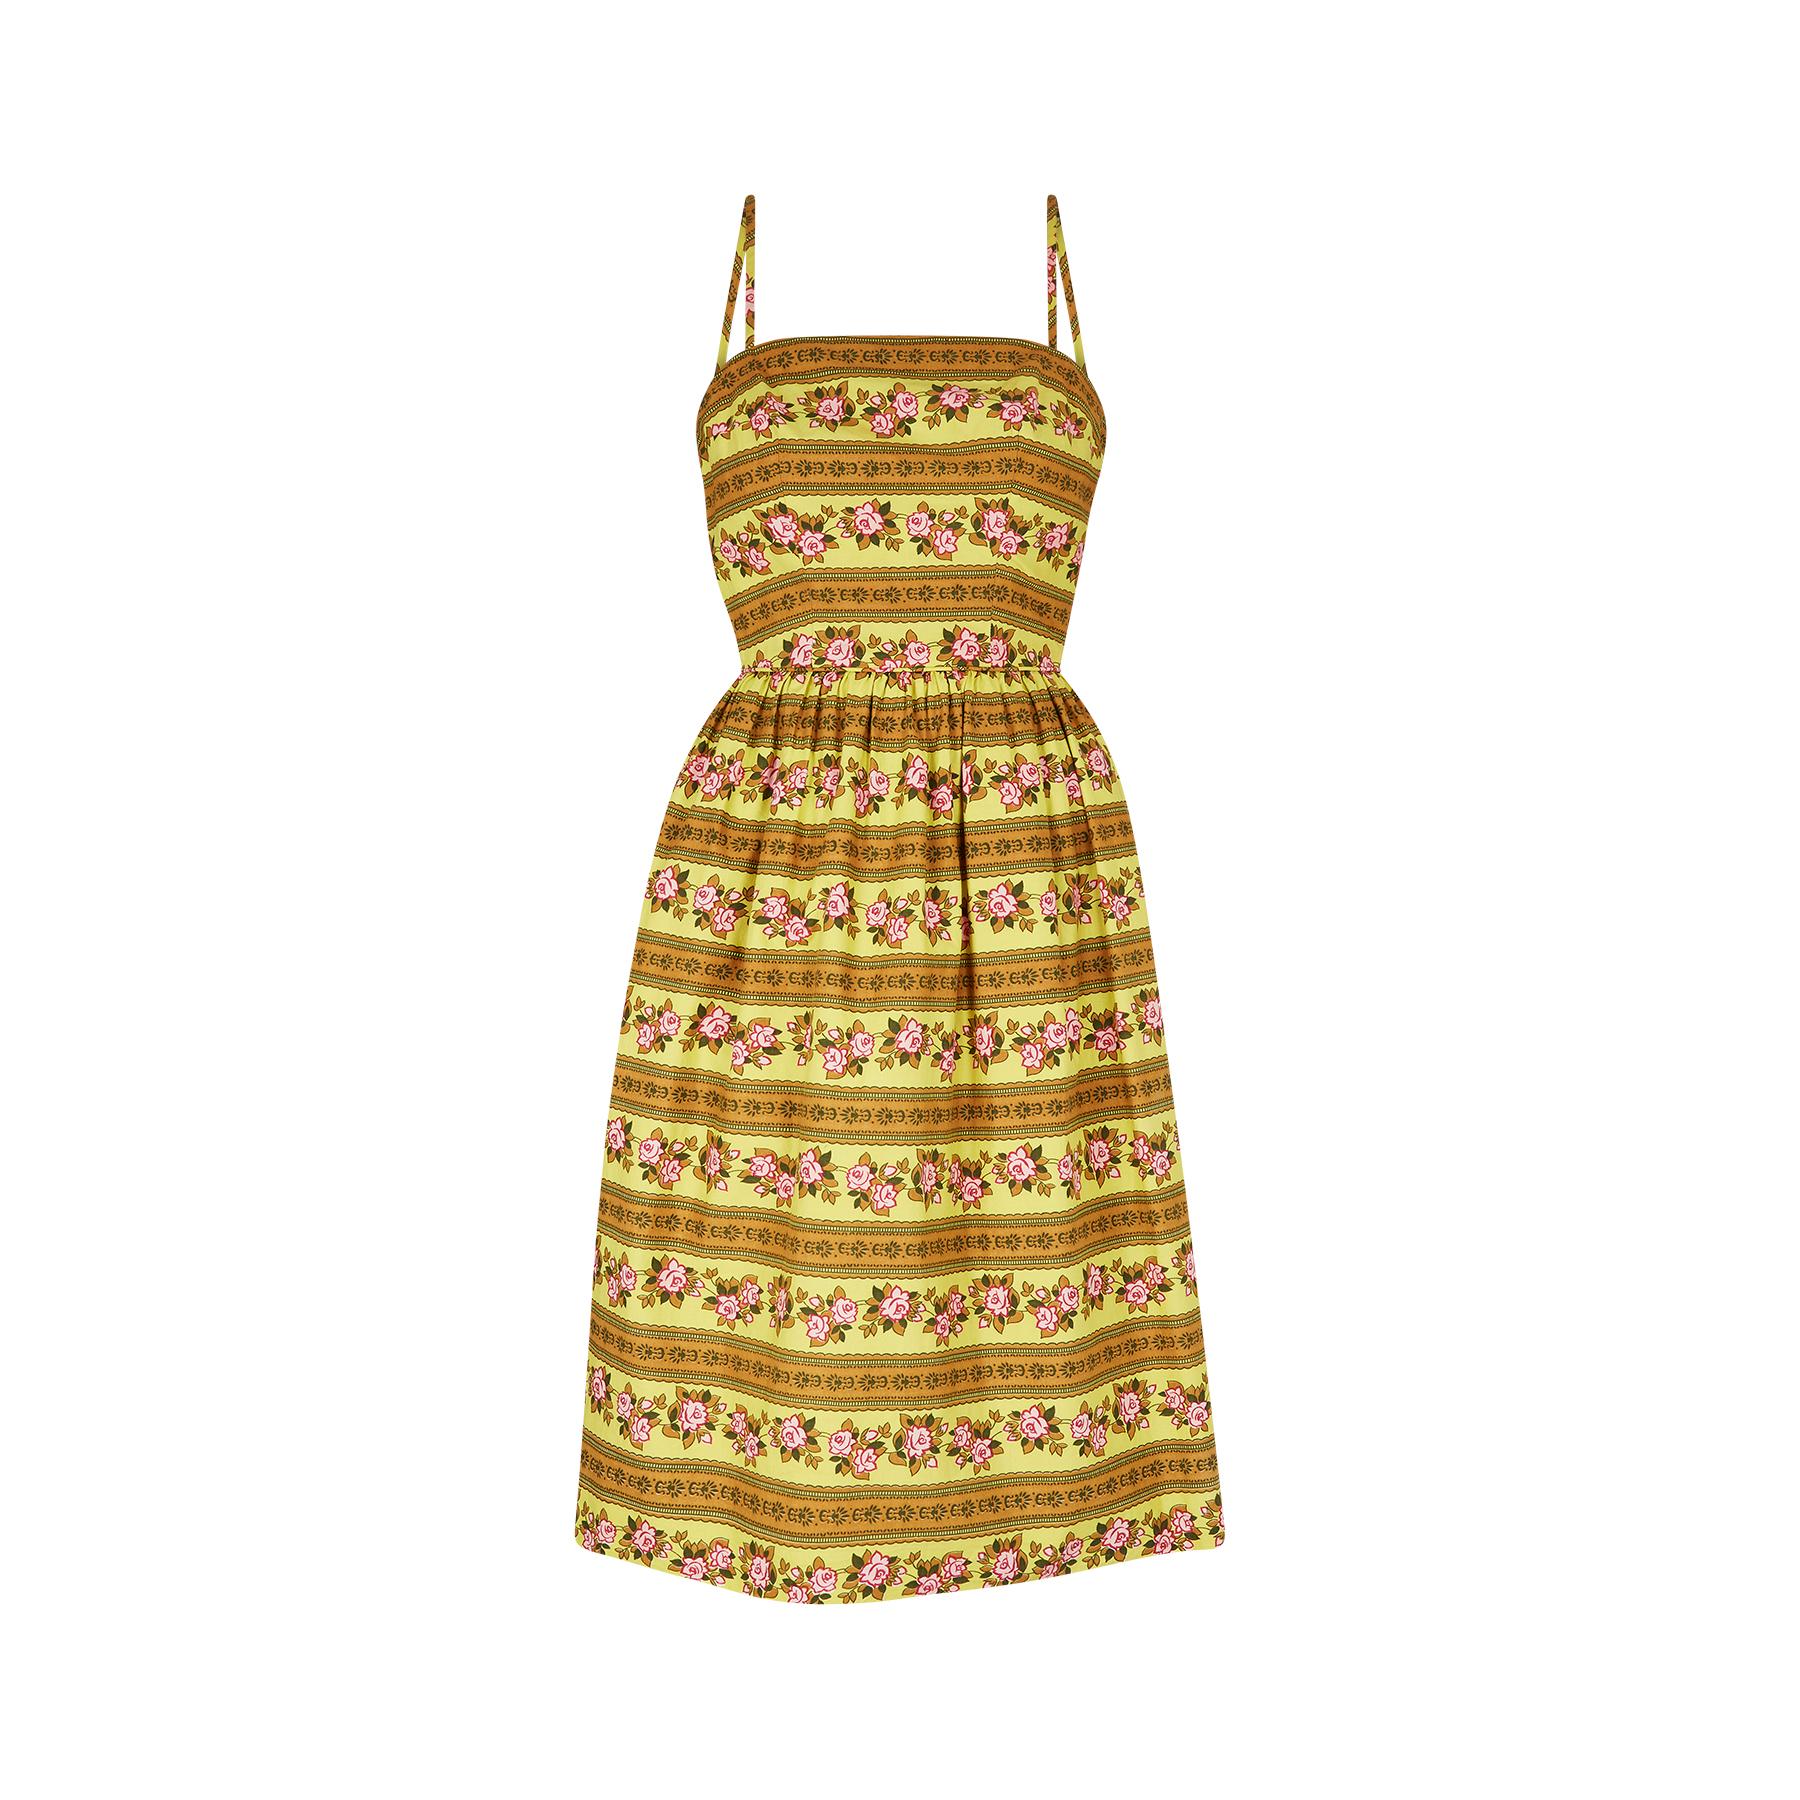 Ende der 1950er oder Anfang der 1960er Jahre entworfenes Sommerkleid von Sambo Fashions, einer britischen Qualitätsmarke, die in den 40er bis 60er Jahren tätig war. Der Druck auf diesem Kleid gefällt mir sehr gut: ein hübsches Band mit Rosenmuster,